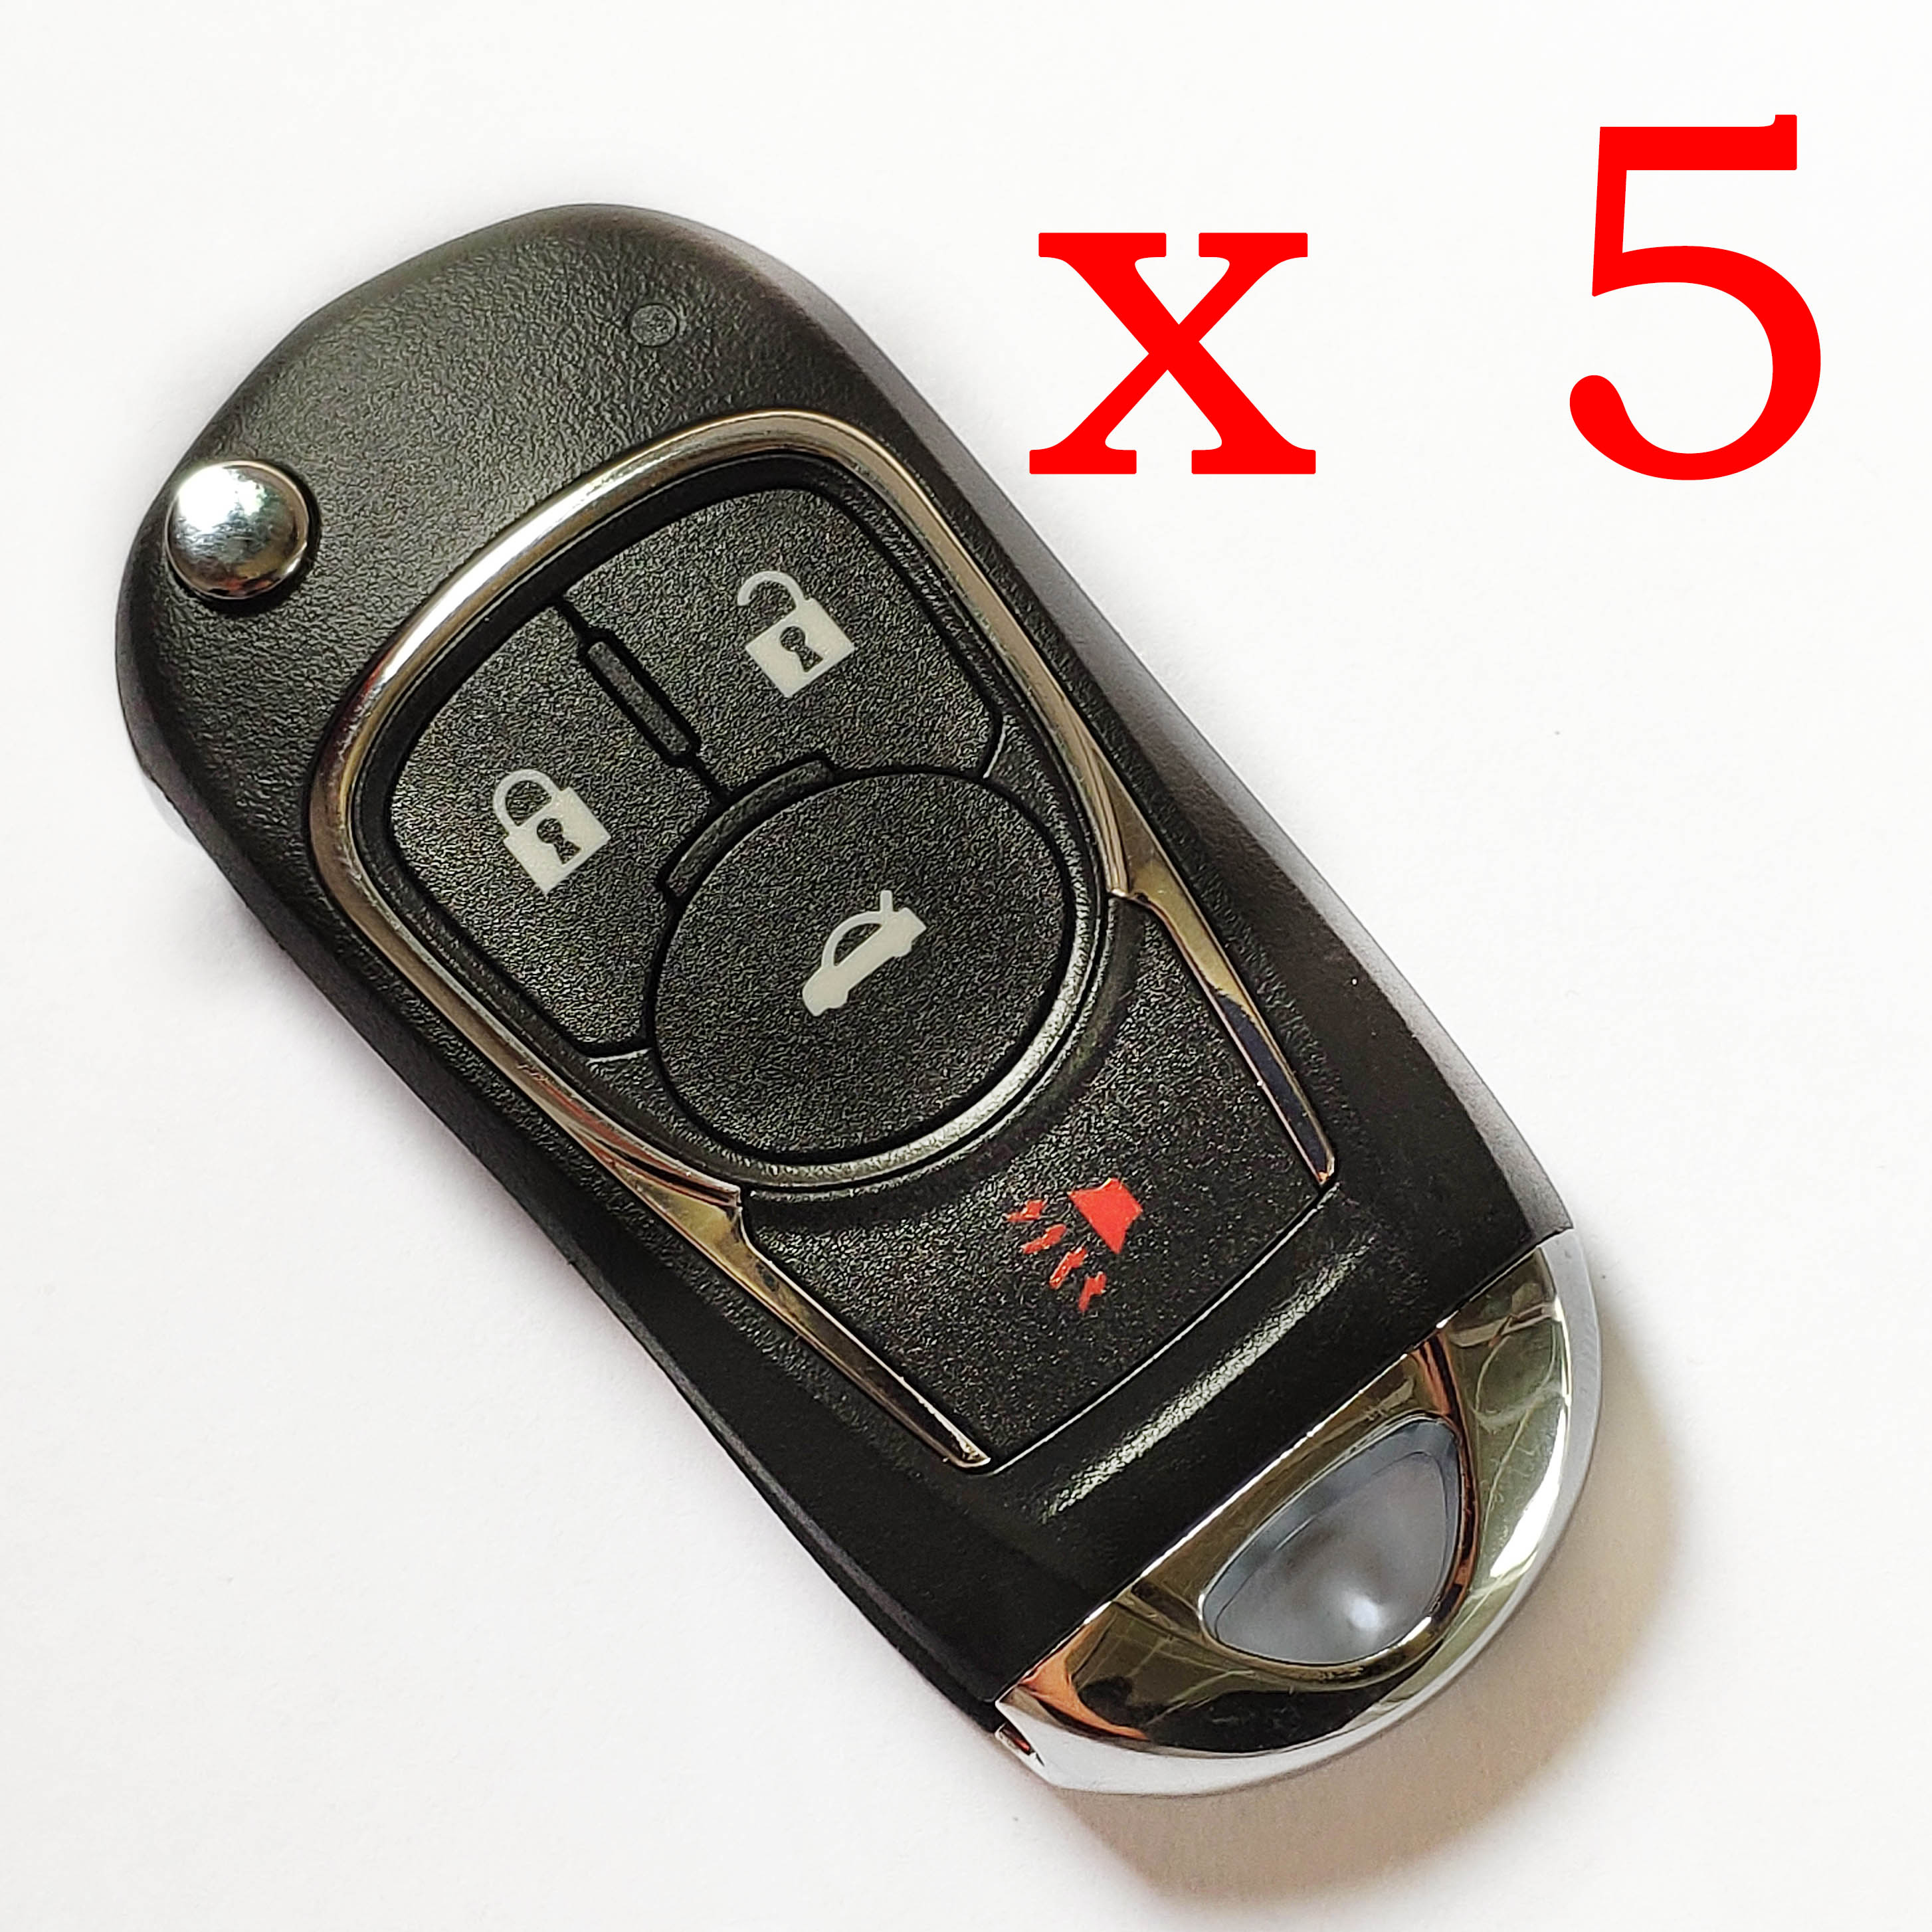 5 pieces Xhorse VVDI GM Type Universal Remote Key - XKBU02EN - with Blades & Logos